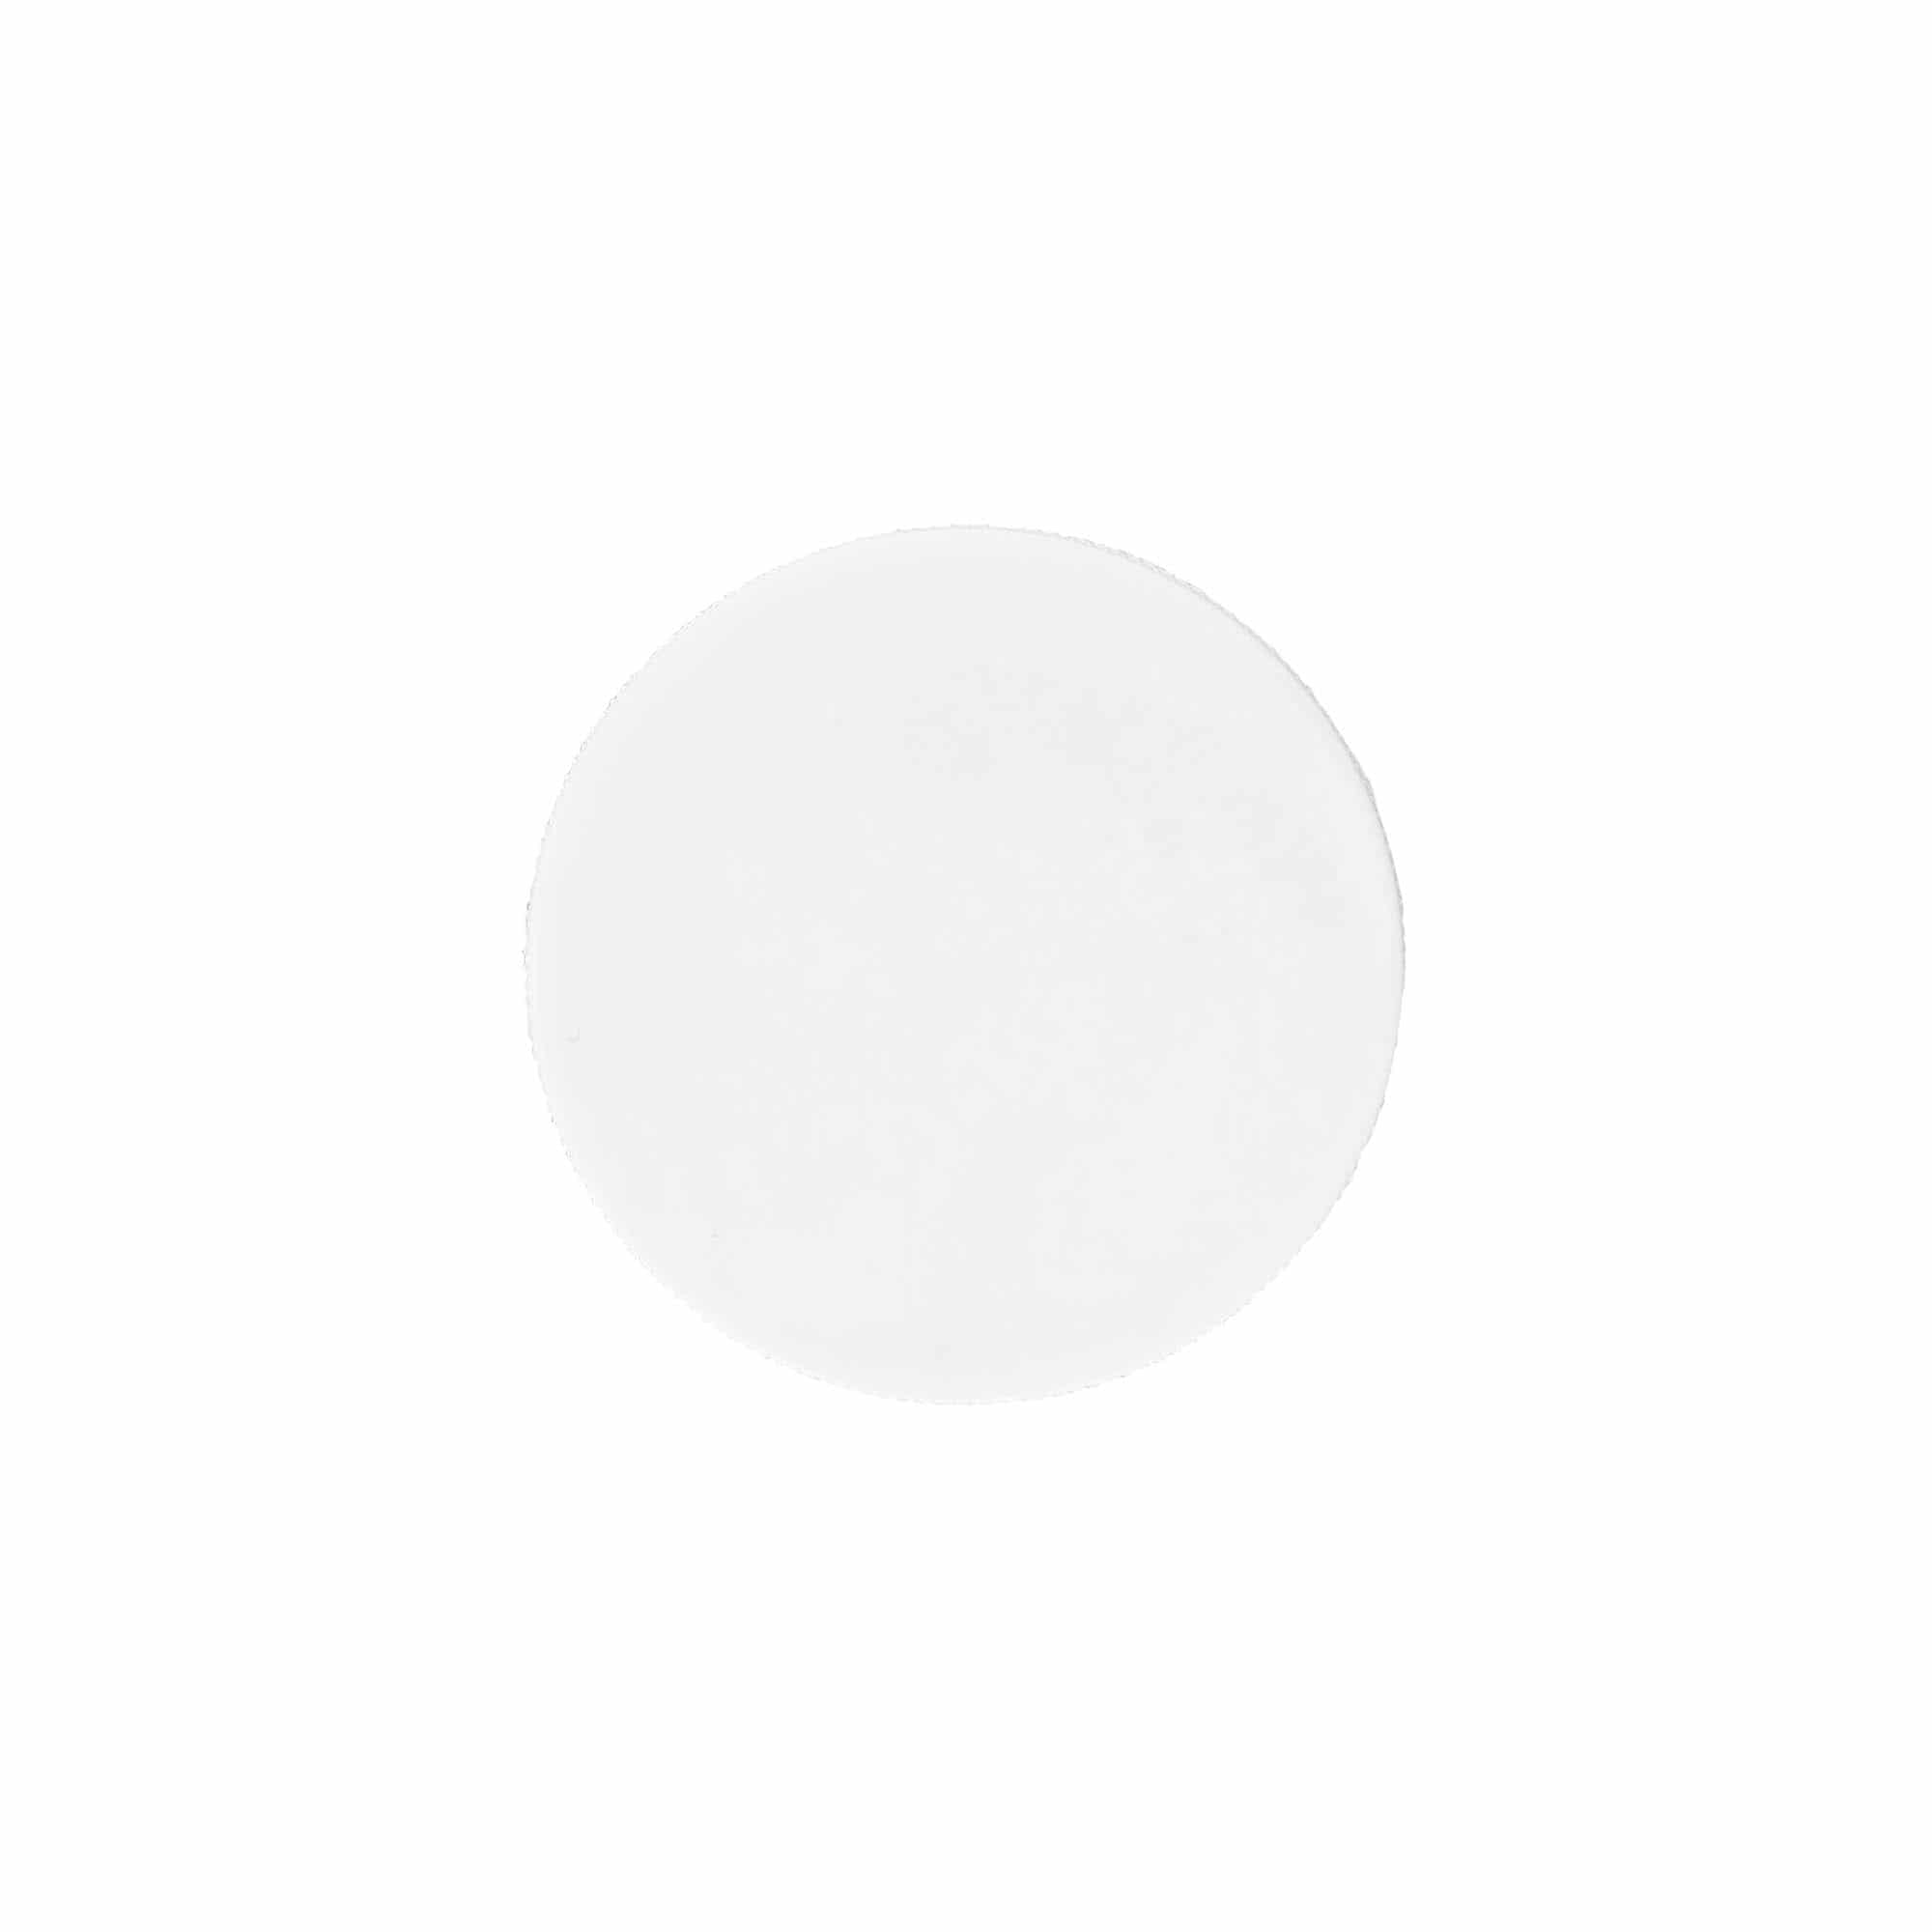 Zakrętka, tworzywo sztuczne PP, kolor biały, do zamknięcia: GPI 45/400